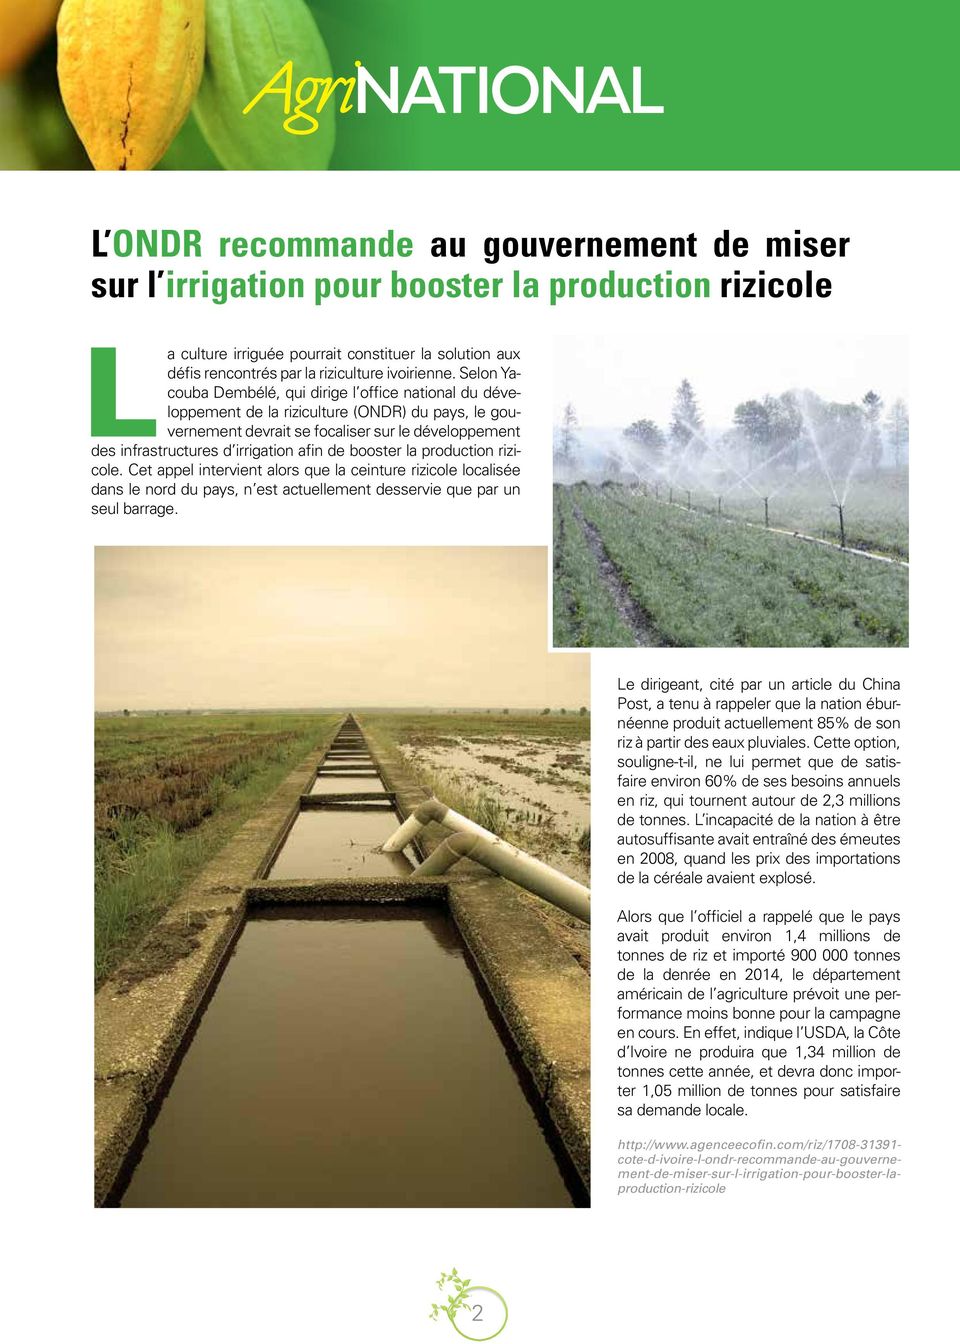 Selon Yacouba Dembélé, qui dirige l office national du développement de la riziculture (ONDR) du pays, le gouvernement devrait se focaliser sur le développement des infrastructures d irrigation afin